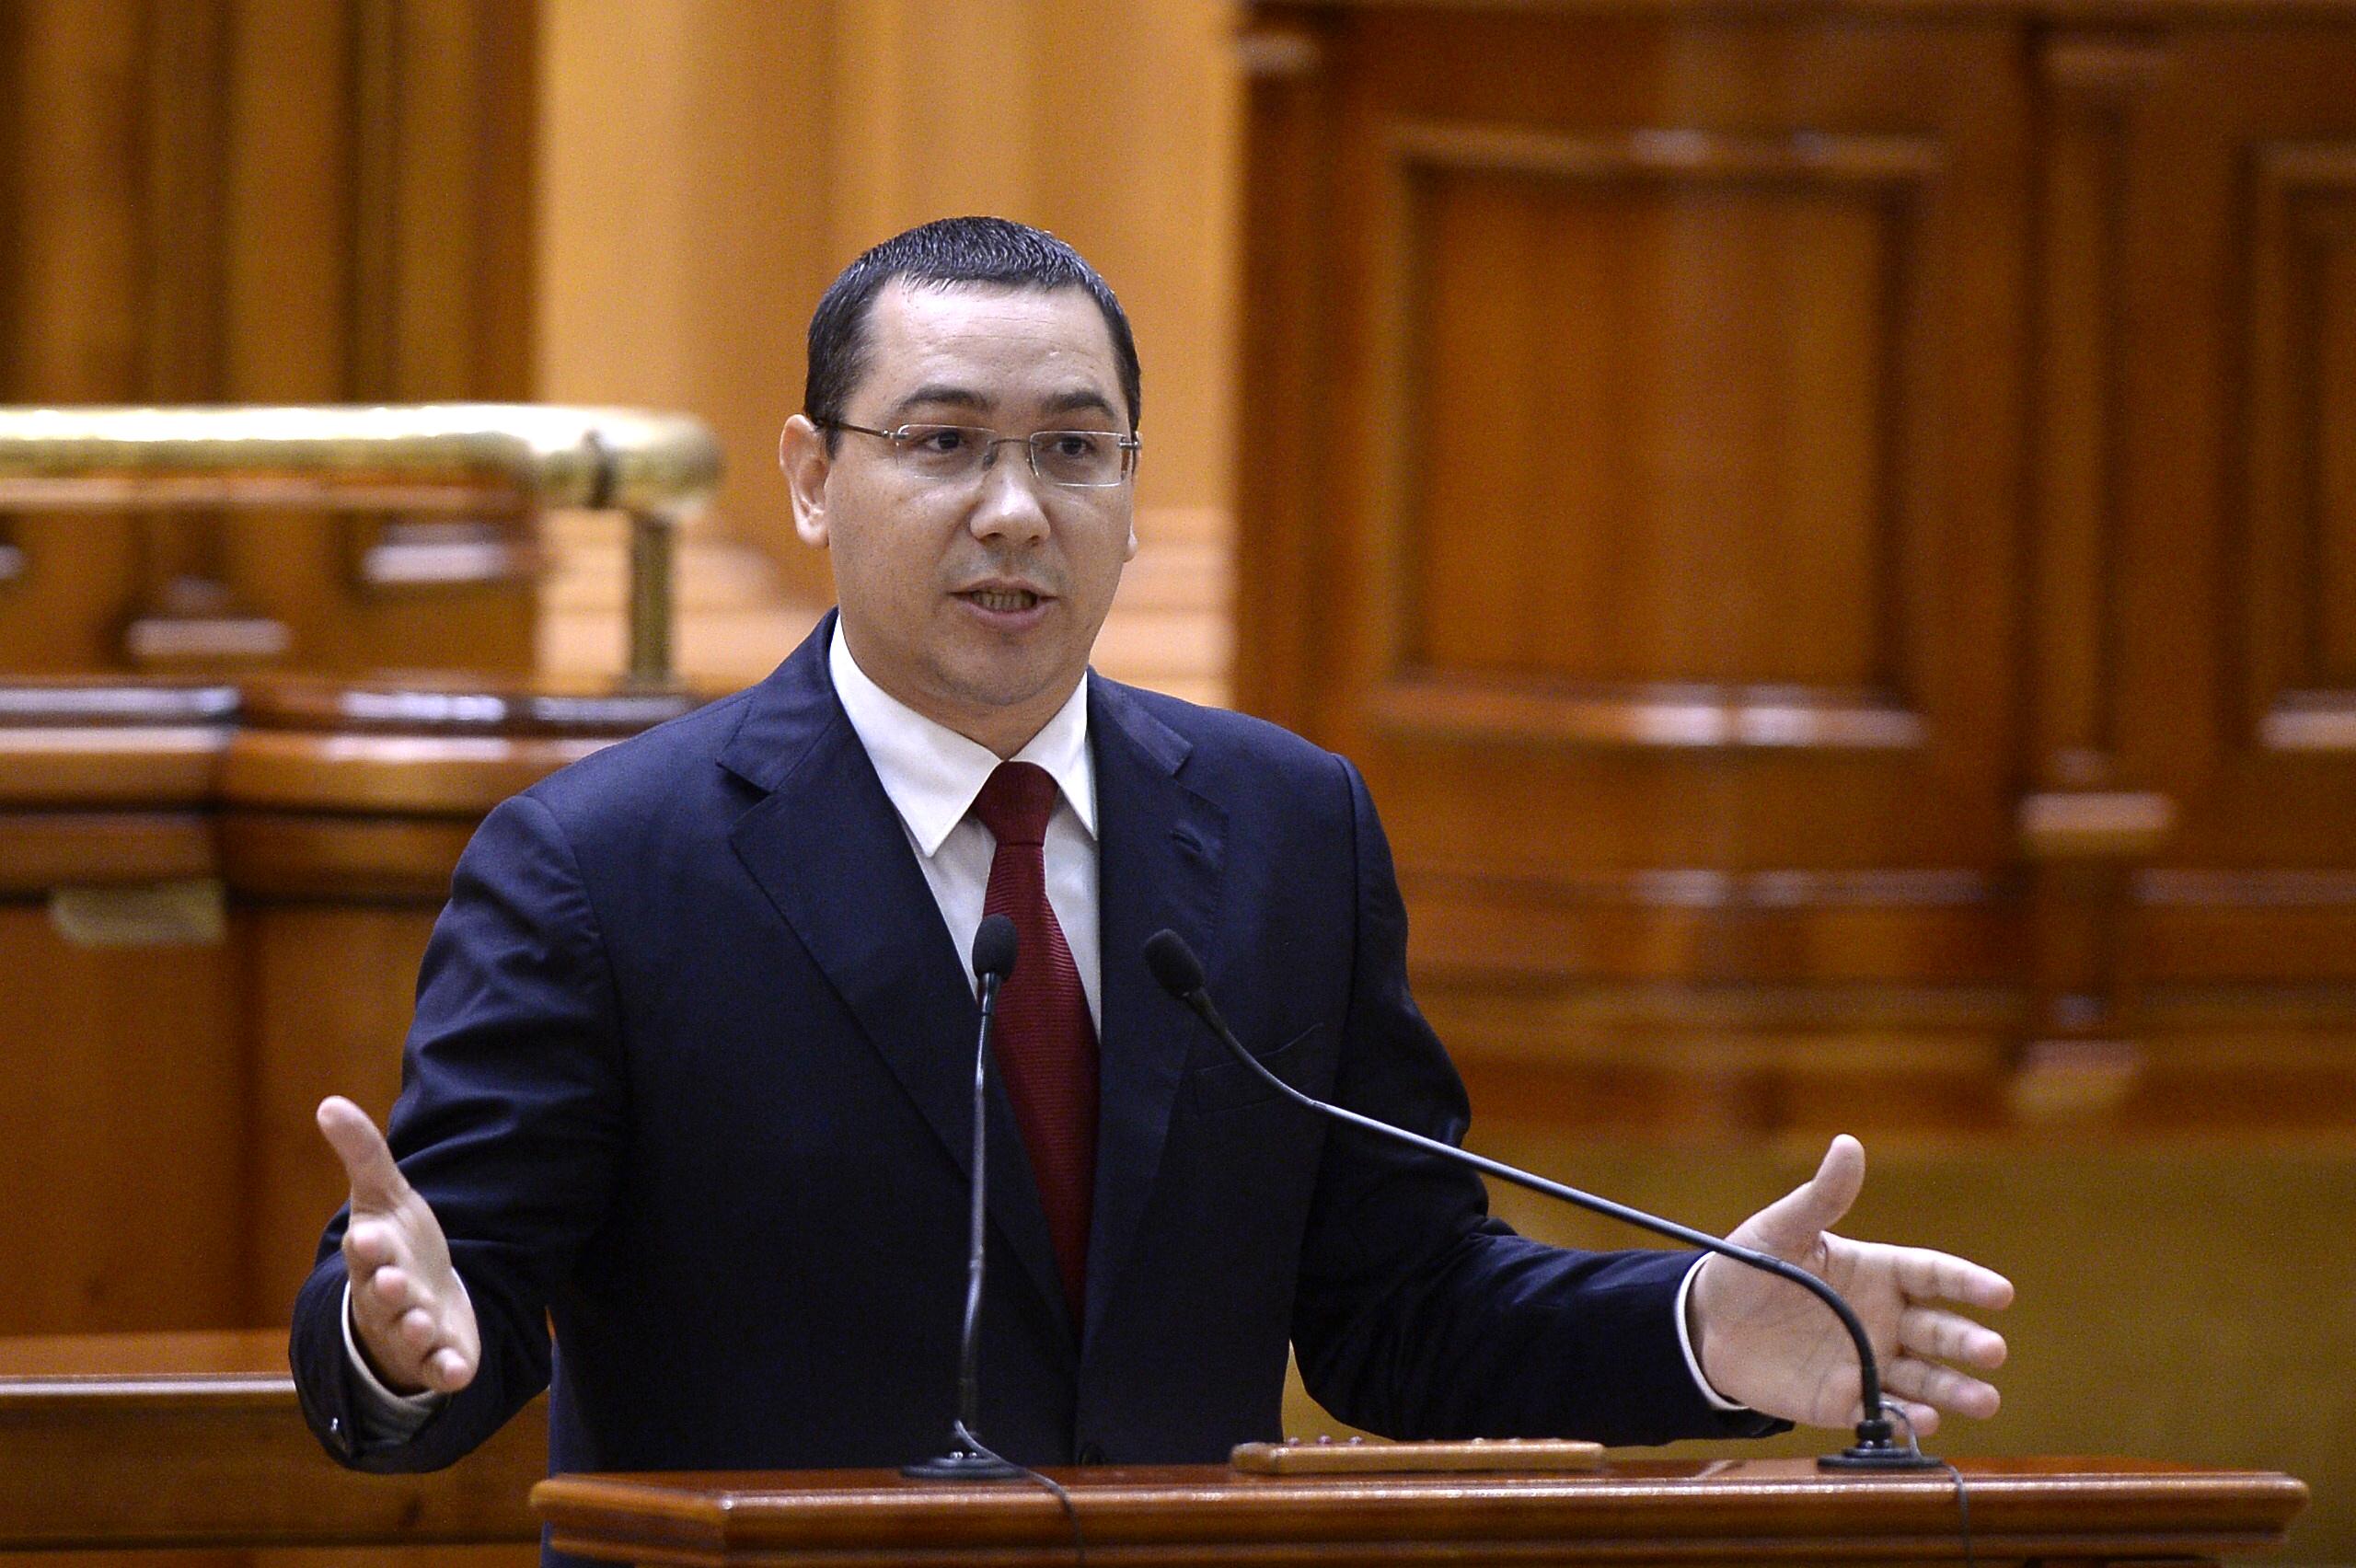 Victor Ponta szónokol a parlamentben a bizalmatlansági szavazás előtt